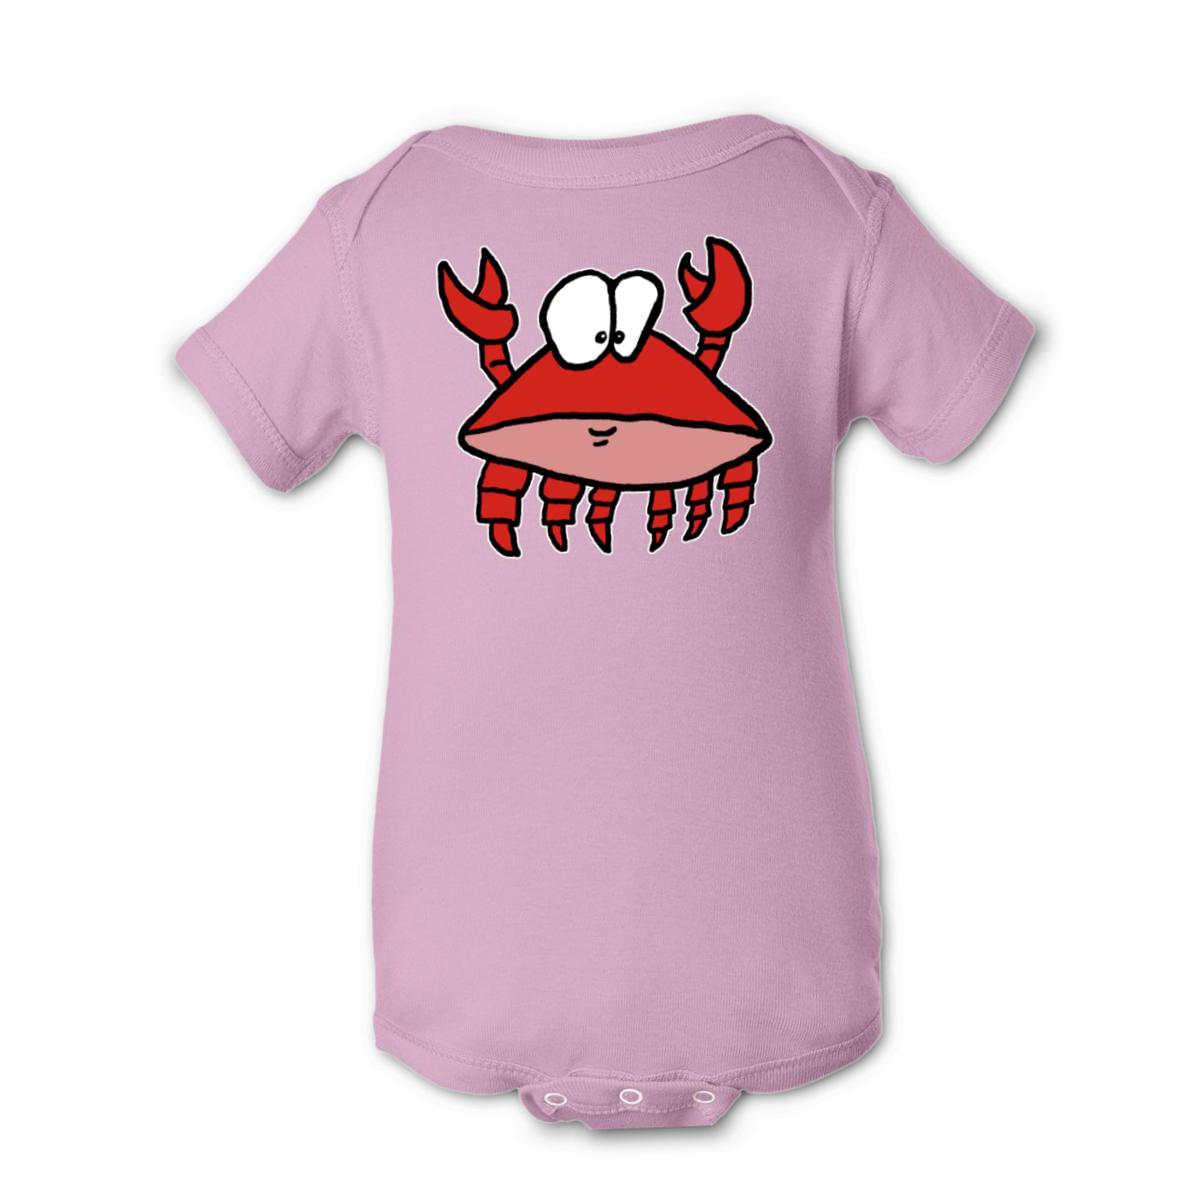 Crab 2.0 Onesie 12M pink